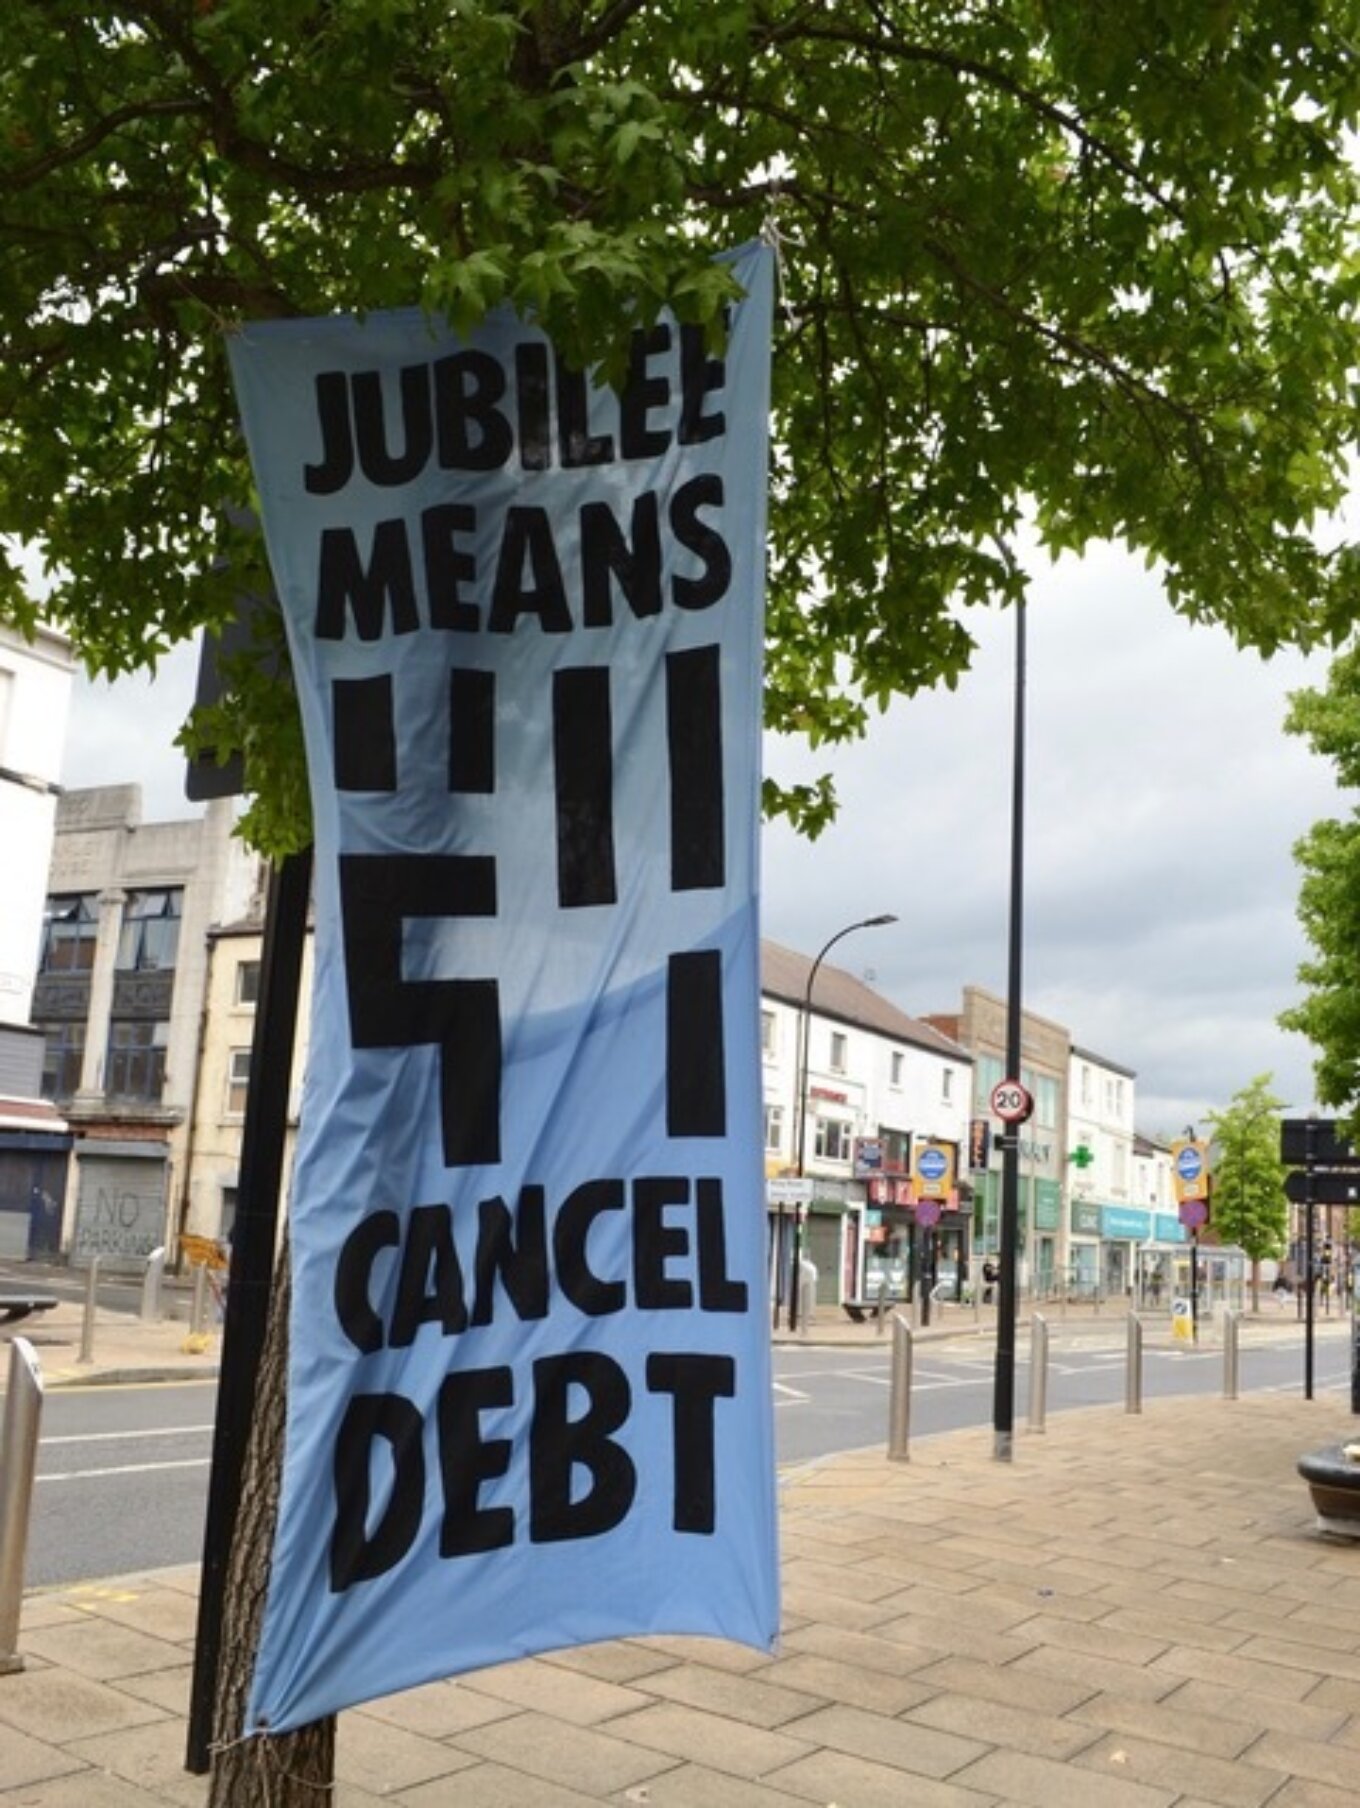 Jubilee means cancel debt